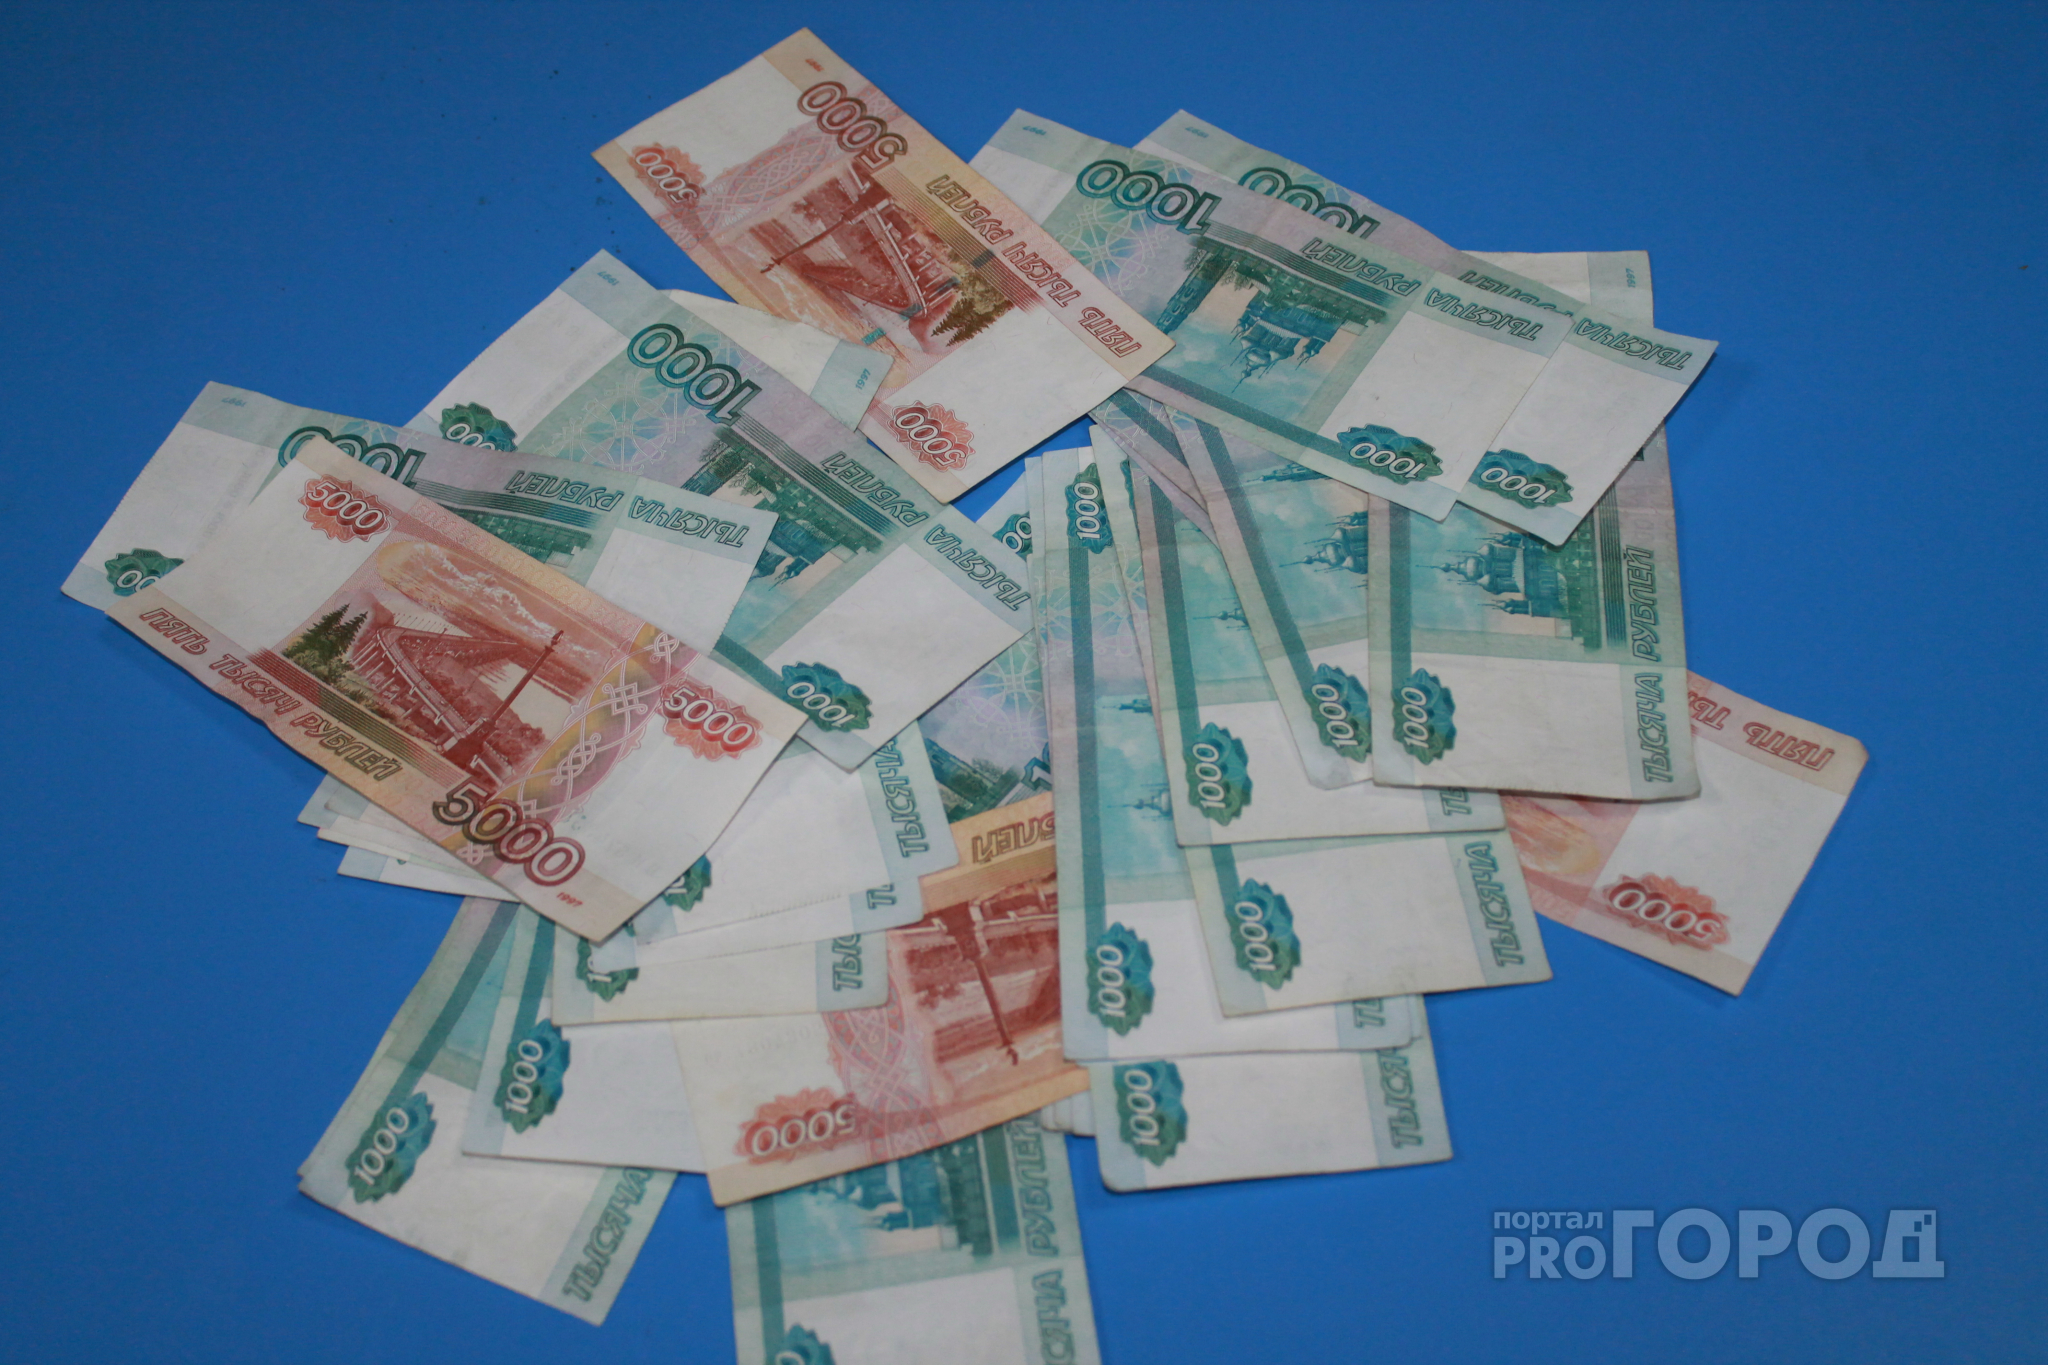 Около 70 тысяч рублей неработающие жители Дзержинска отдали мошенникам